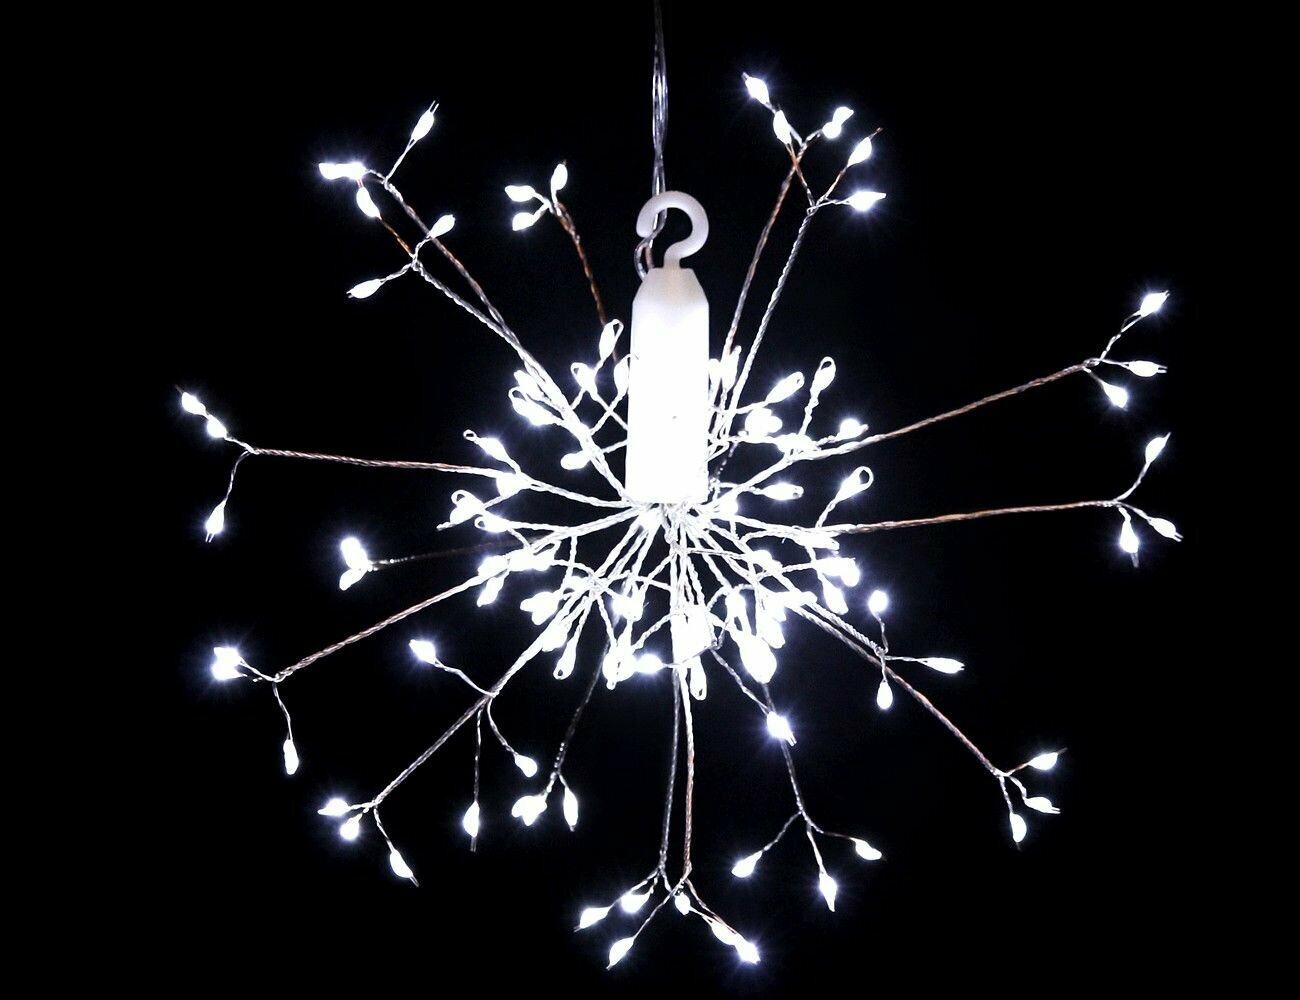 Светодиодное украшение разряд молнии, 20 см, 120 холодных белых LED ламп, батарейки, серебряная проволока, IP20, Serpantin 183-0228